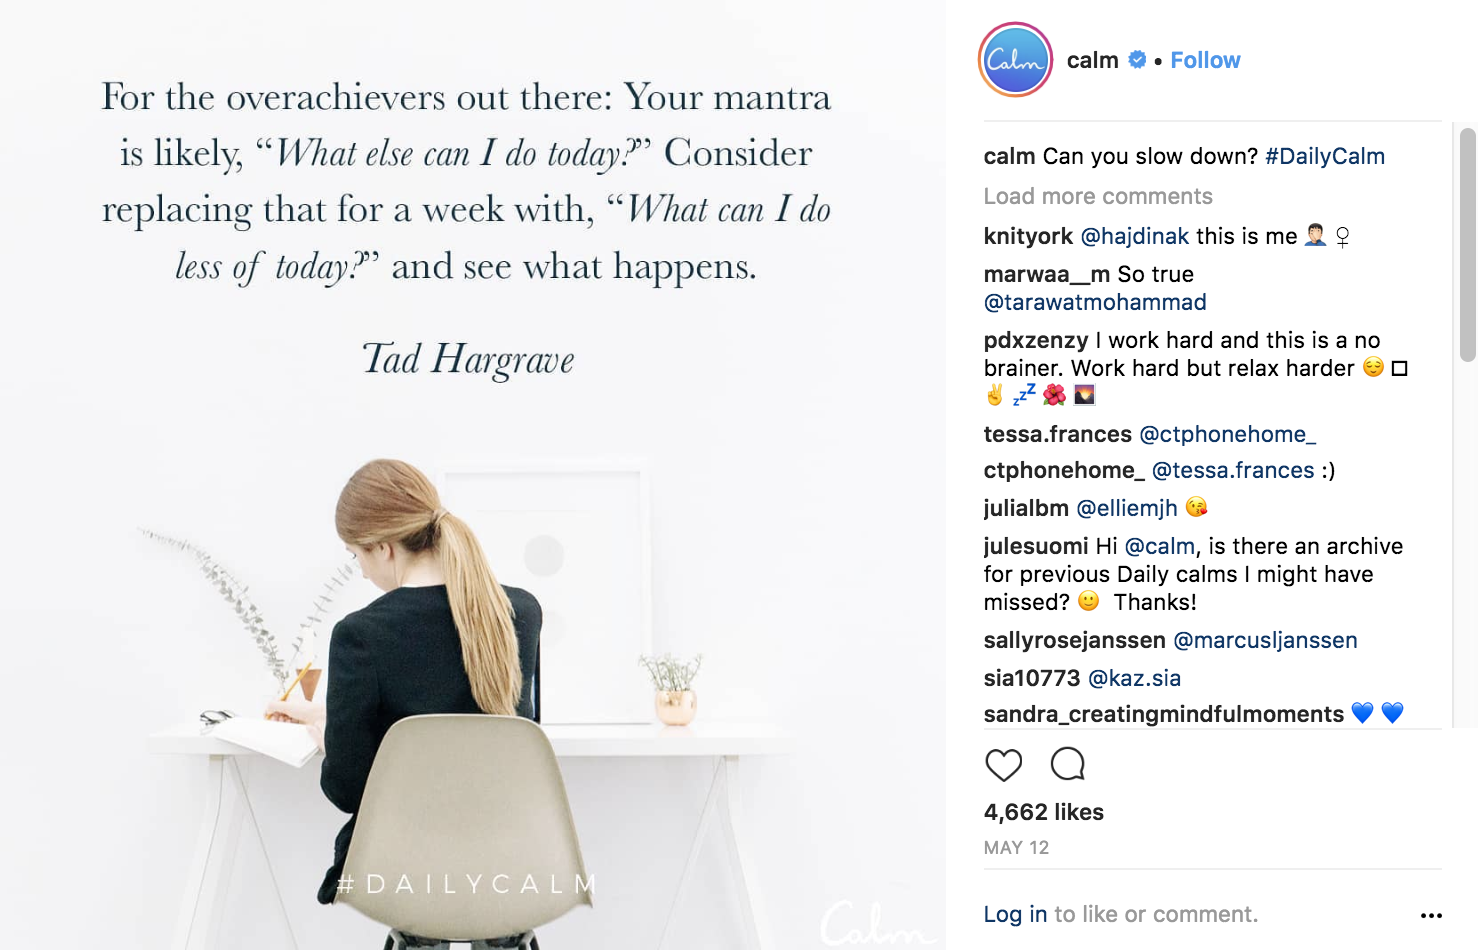 calm-instagram-marketing-strategy